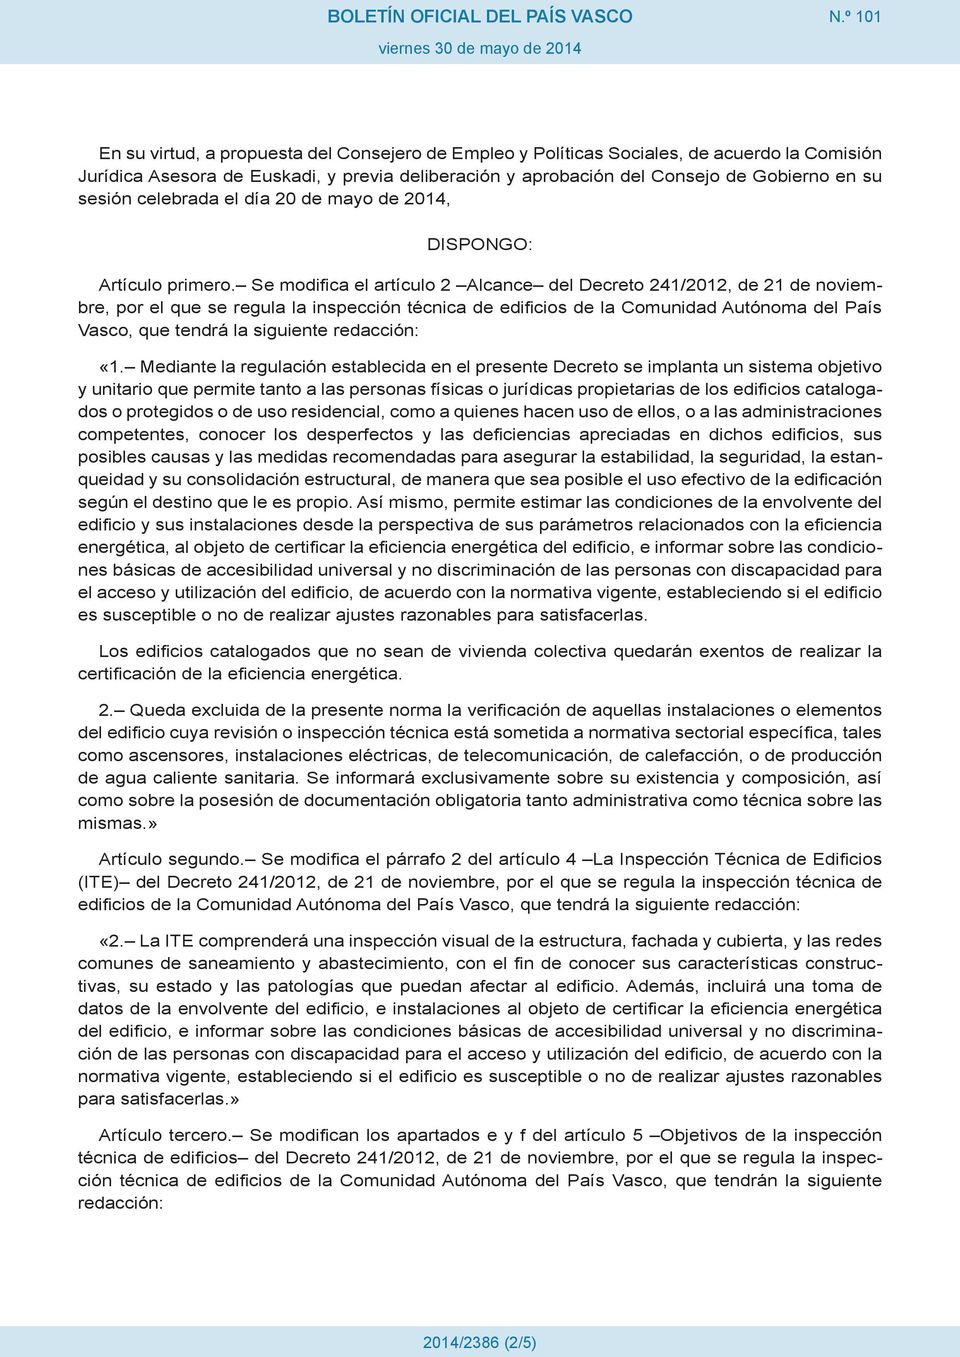 Se modifica el artículo 2 Alcance del Decreto 241/2012, de 21 de noviembre, por el que se regula la inspección técnica de edificios de la Comunidad Autónoma del País Vasco, que tendrá la siguiente «1.